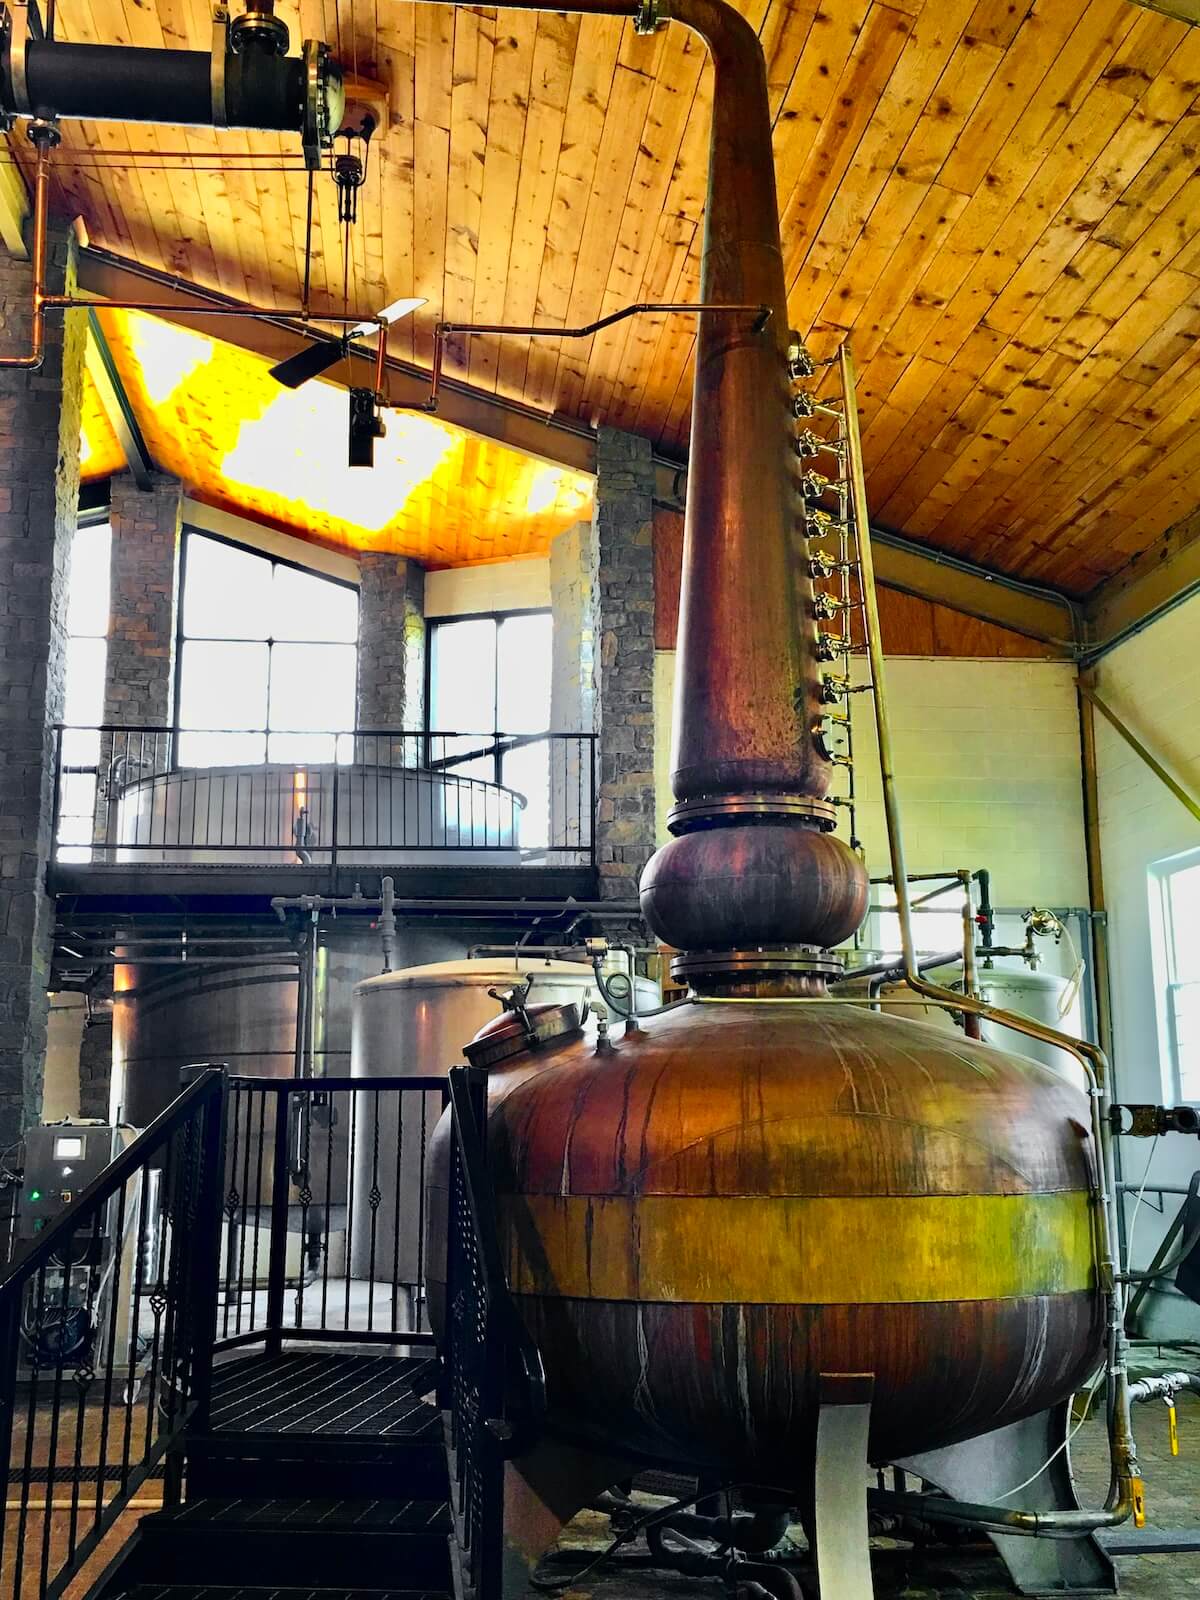 The pot still at willett bourbon distillery